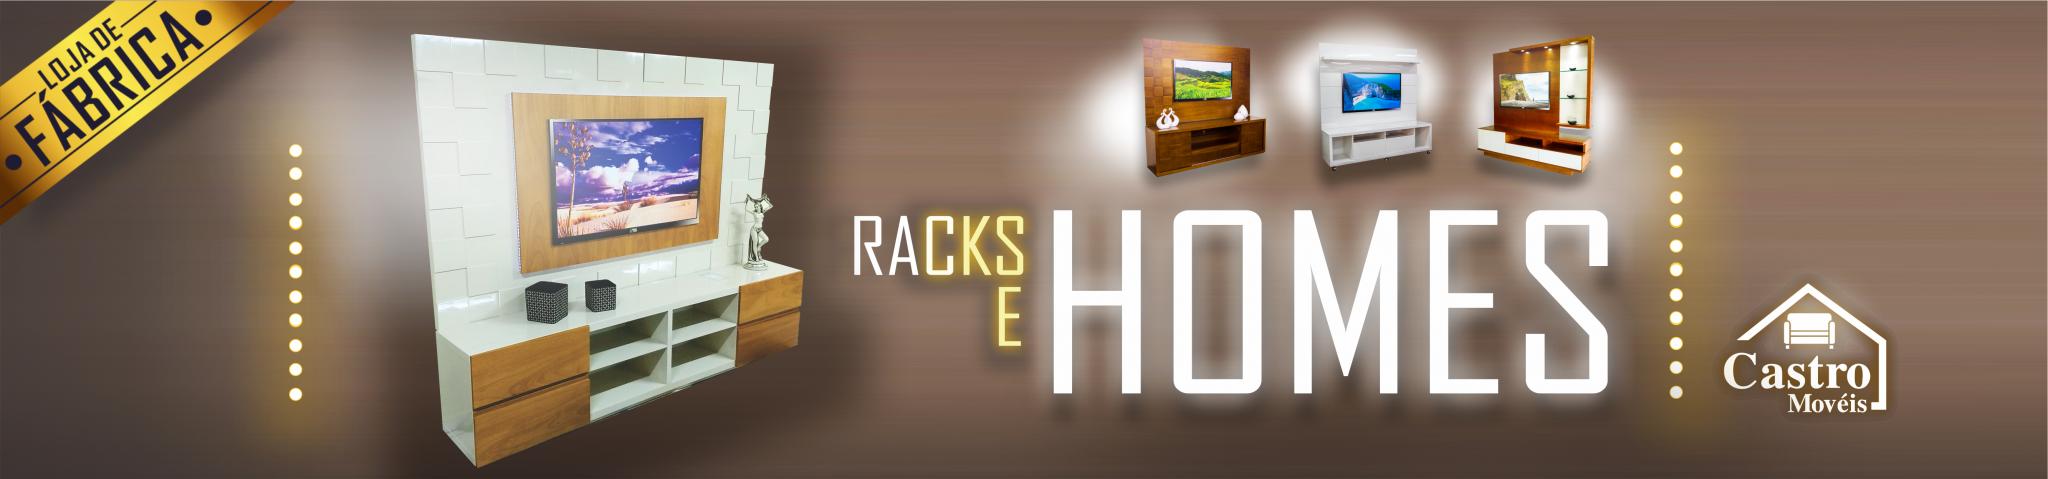 Site-Racks-e-Homes-Banner-Castro-Móveis-1-2048x479